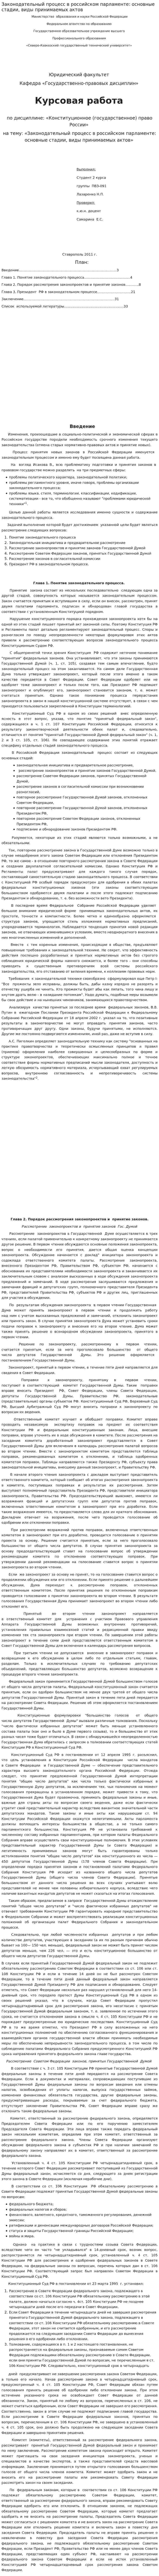 Законодательный процесс в российском парламенте: основные стадии, виды принимаемых актов